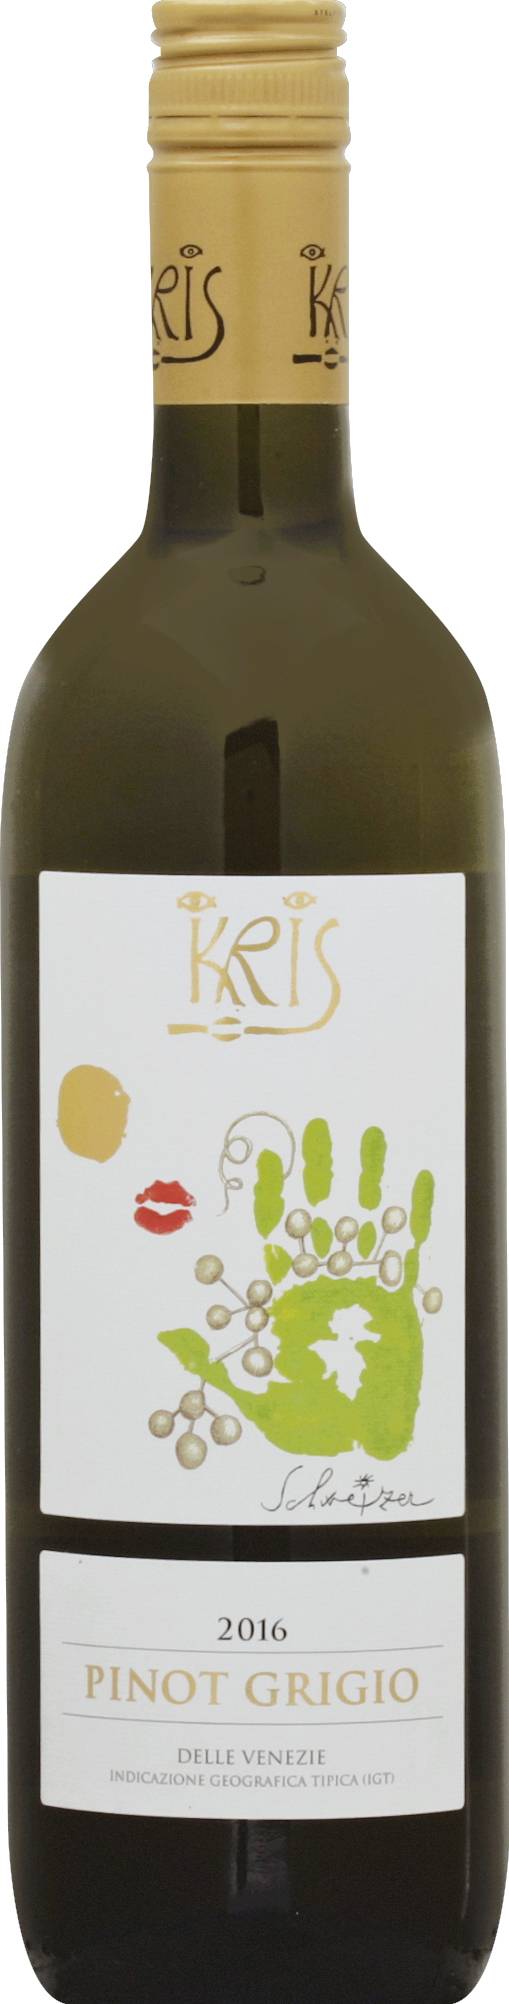 Kris Pinot Grigio Wine 2016 (750 ml)